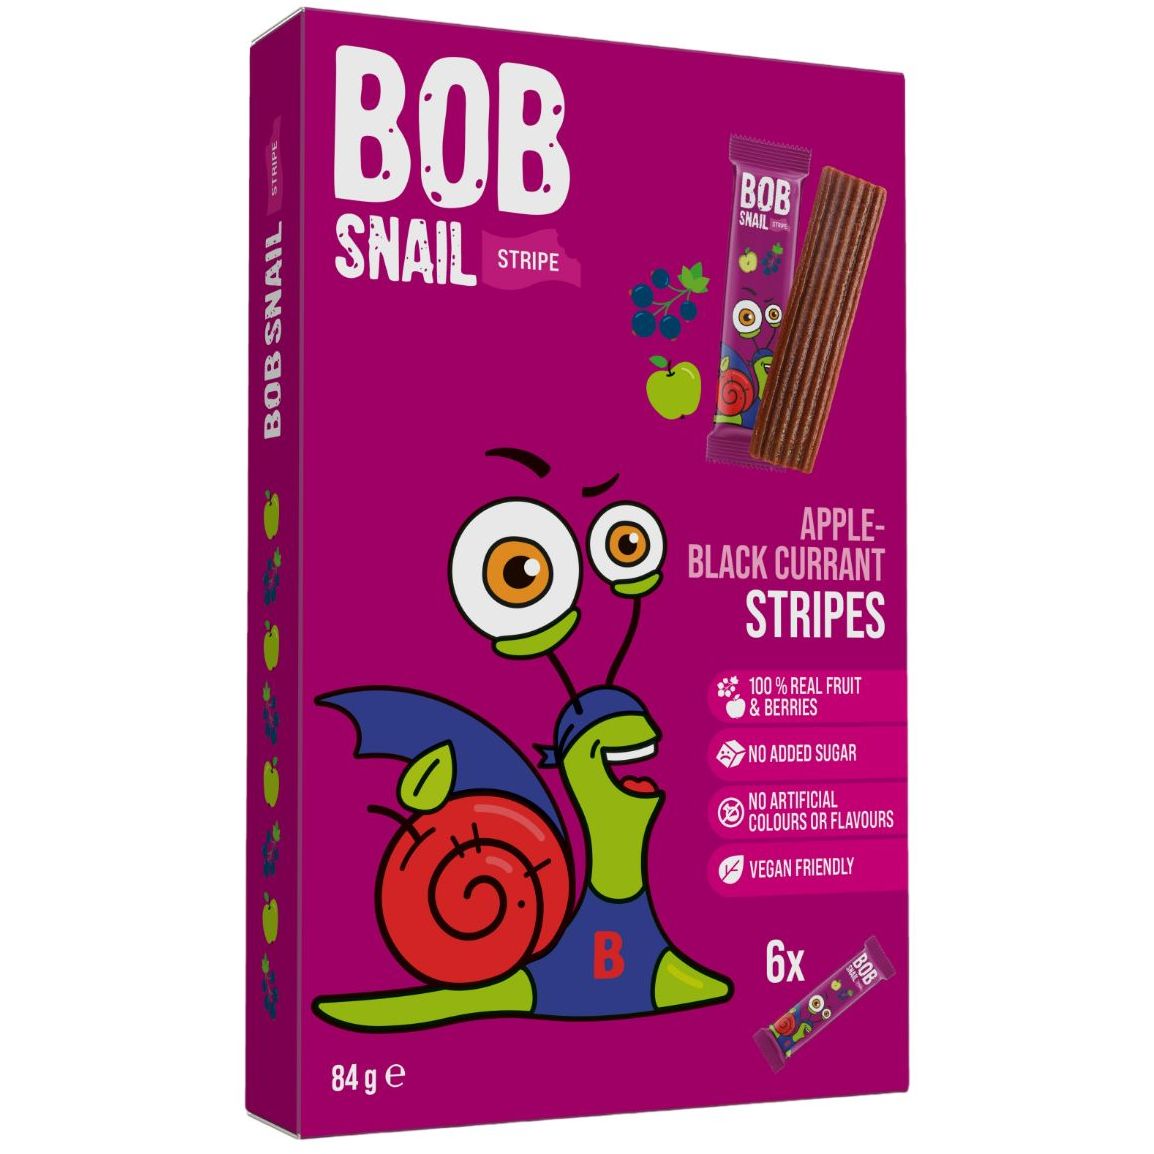 Цукерка фруктово-ягідна Bob Snail Яблучно-чорносмородиновий страйп 84 г (6 шт. х 14 г) - фото 1